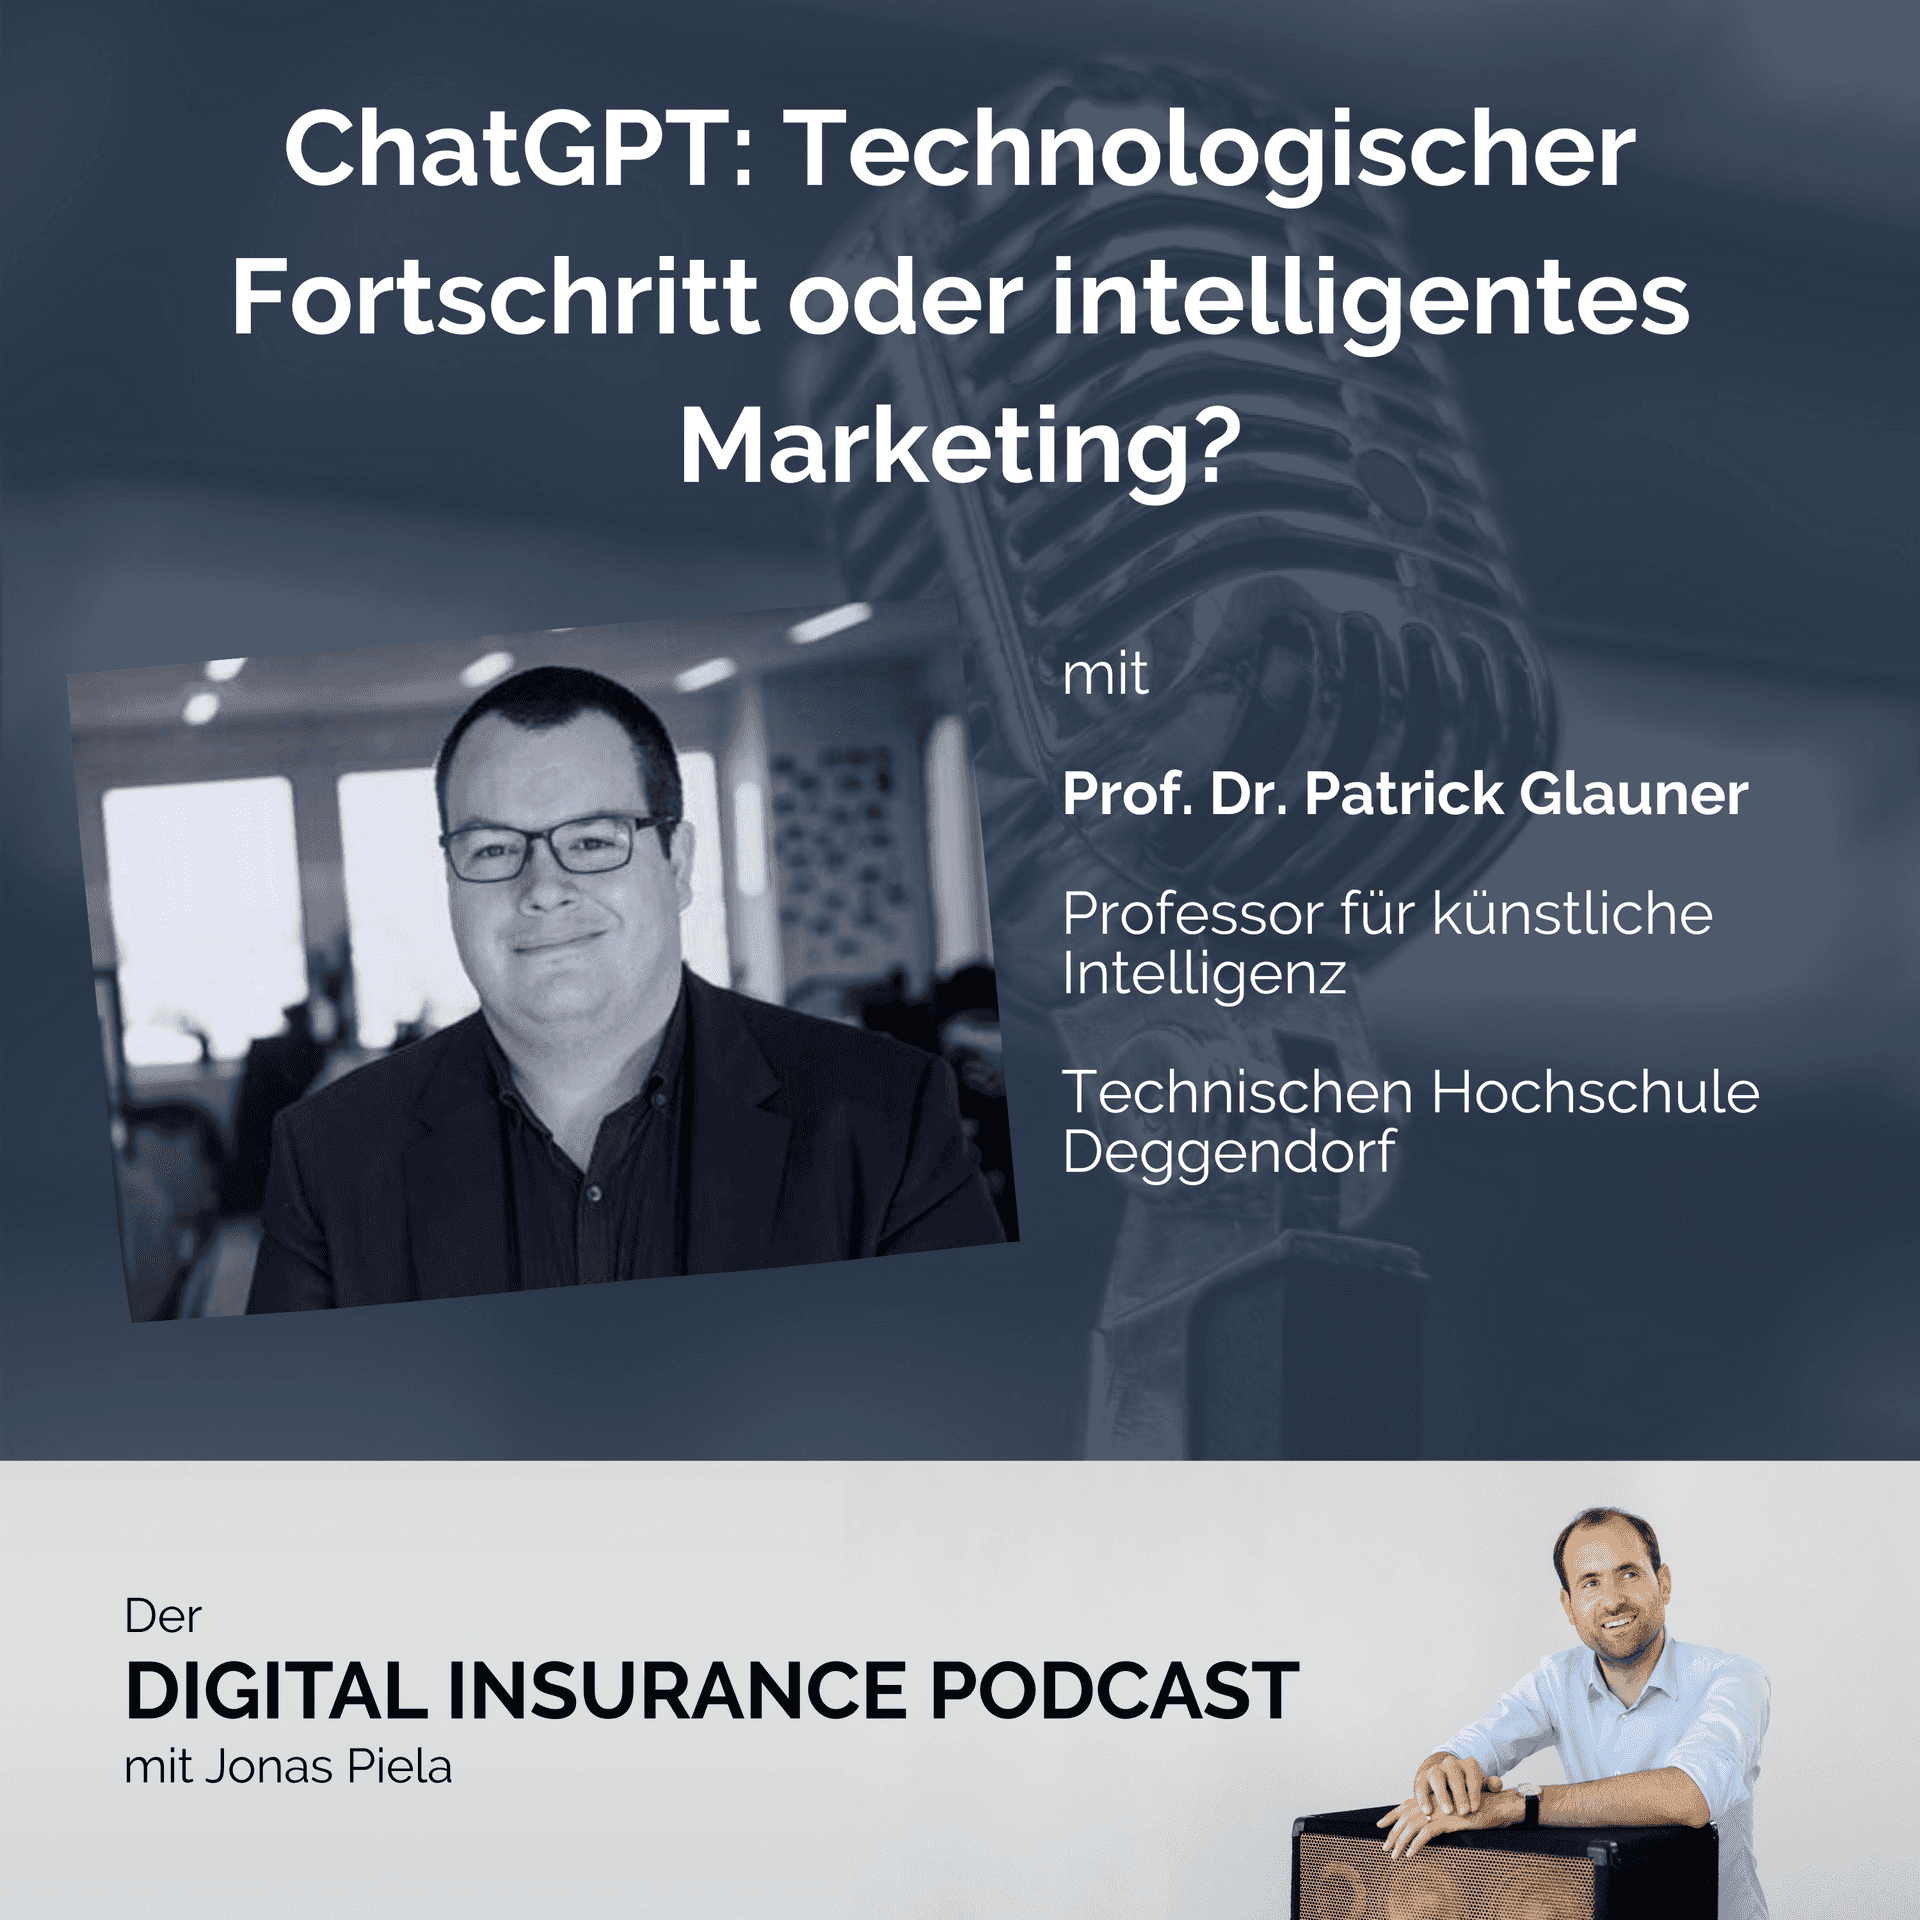 ChatGPT: Technologischer Fortschritt oder intelligentes Marketing? - mit Patrick Glauner